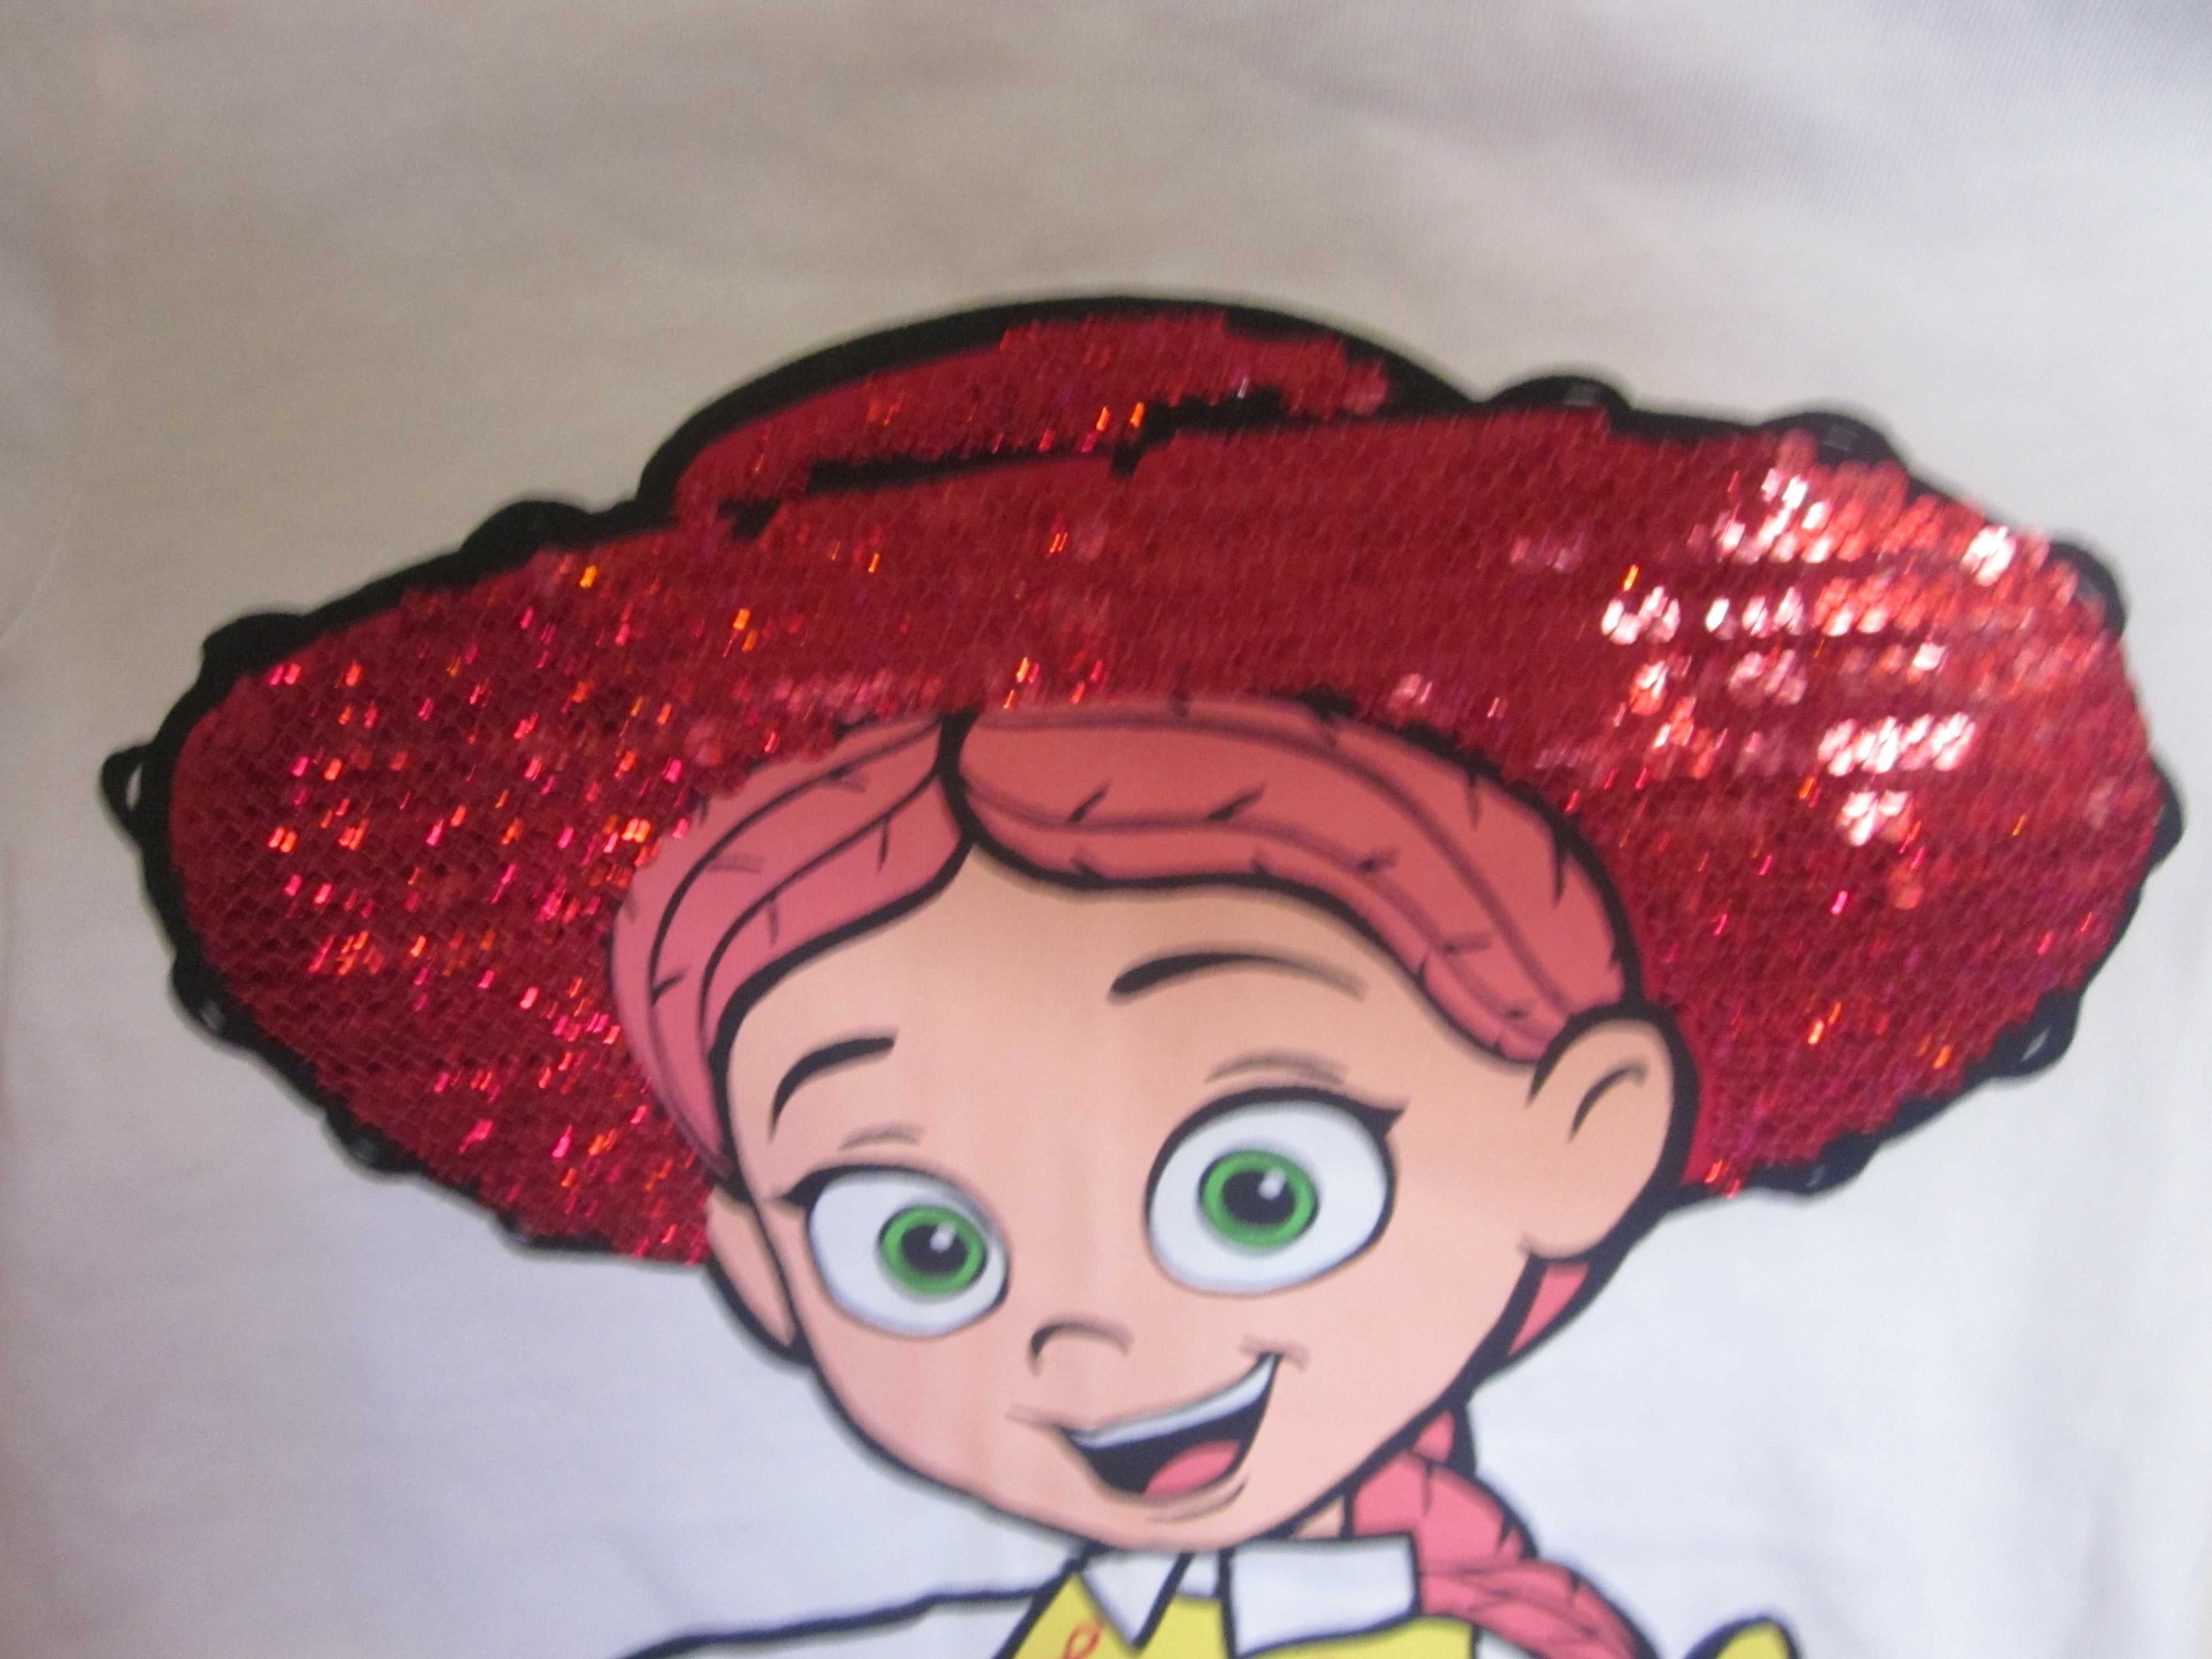 футболка disney на девочку 4-5 лет.шляпа расшита паетками).классная.